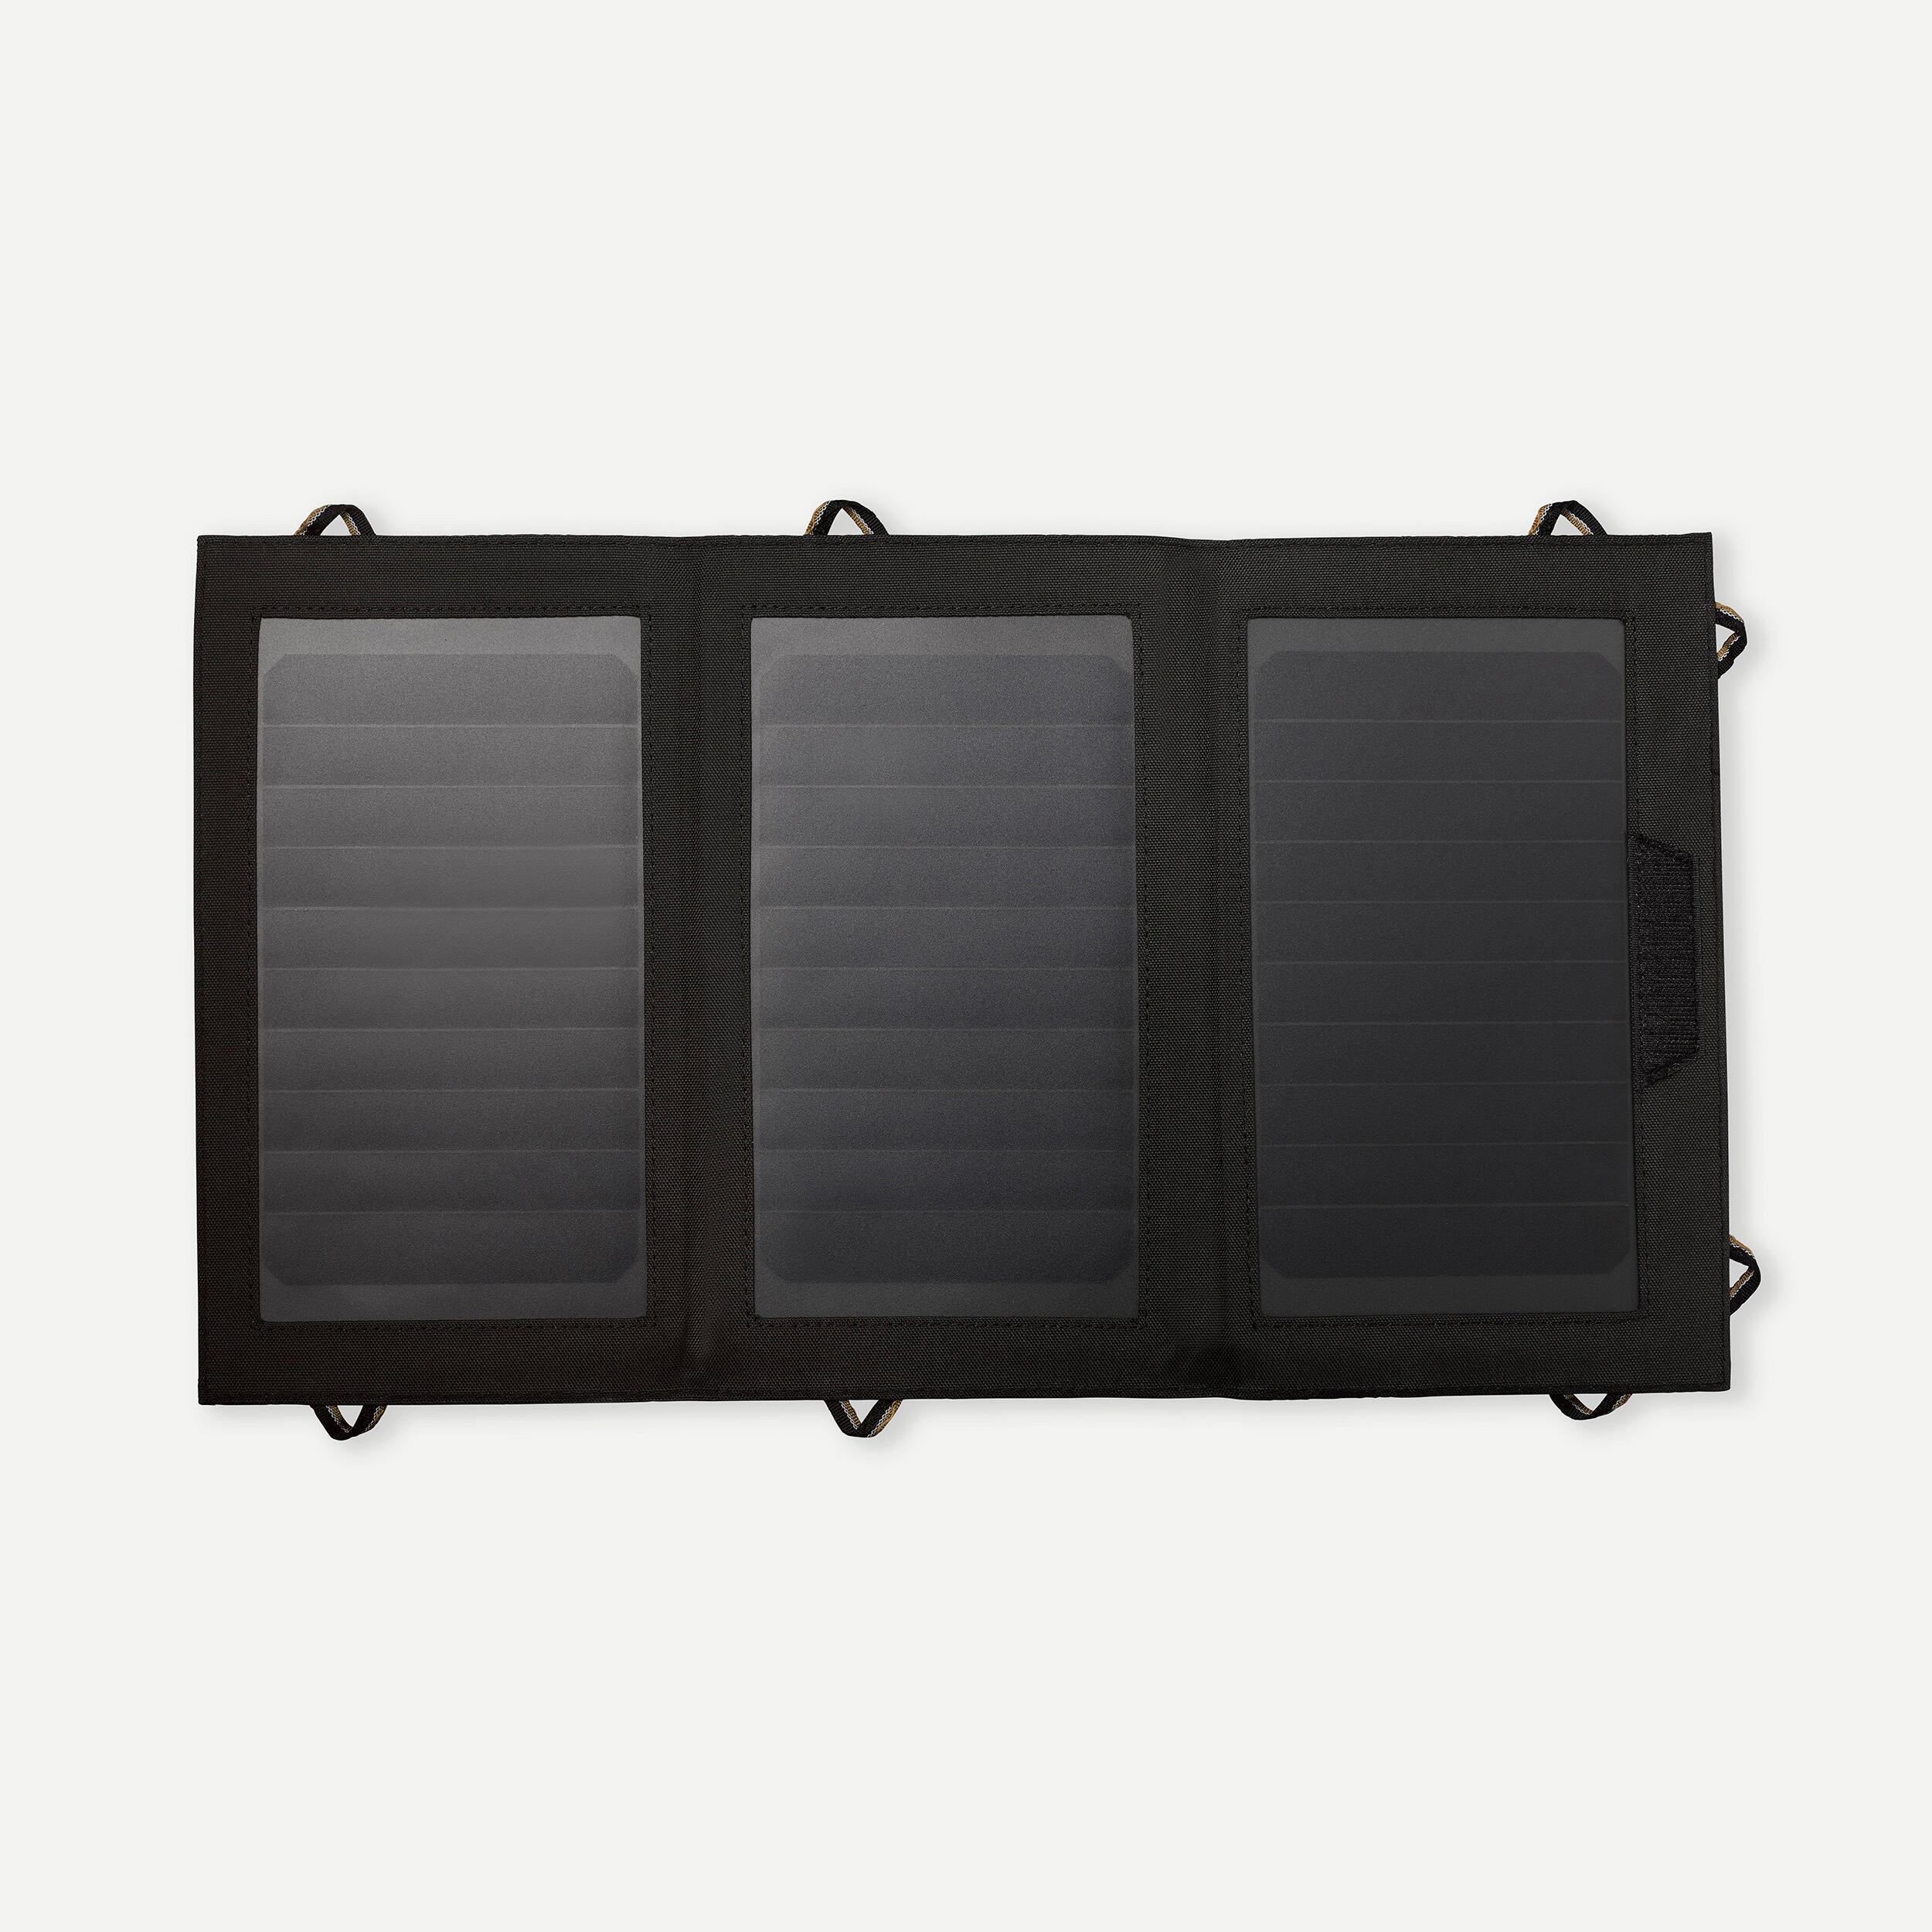 Солнечная панель SLR 900 V2 мощностью 15 Вт Forclaz фотографии